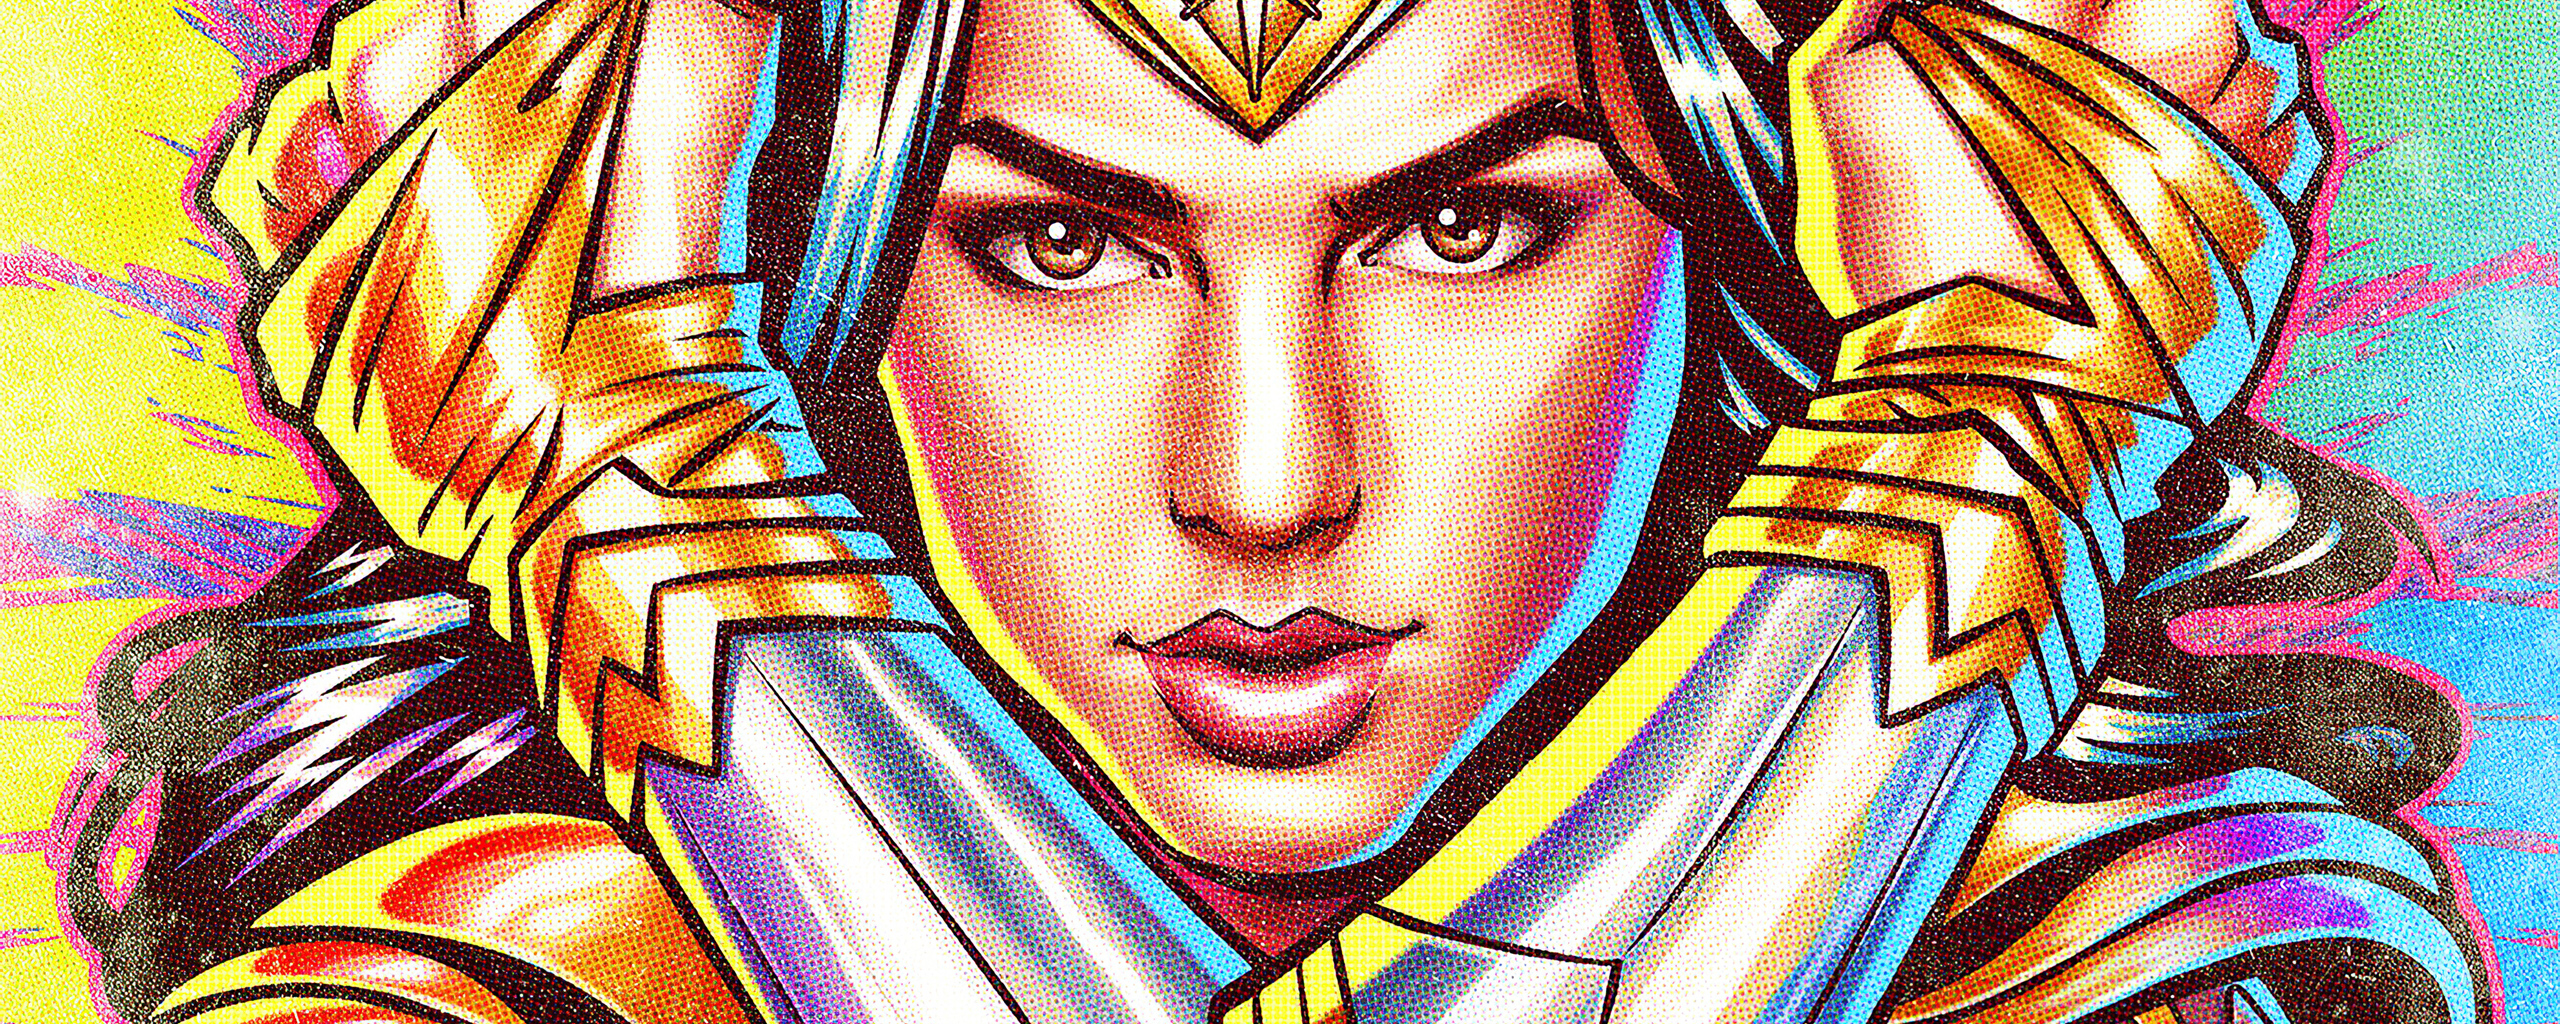 Wonder Woman Lk21 Download / 1440x2960 Wonder Woman 1984 4k 2020 Movie Samsung Galaxy ...